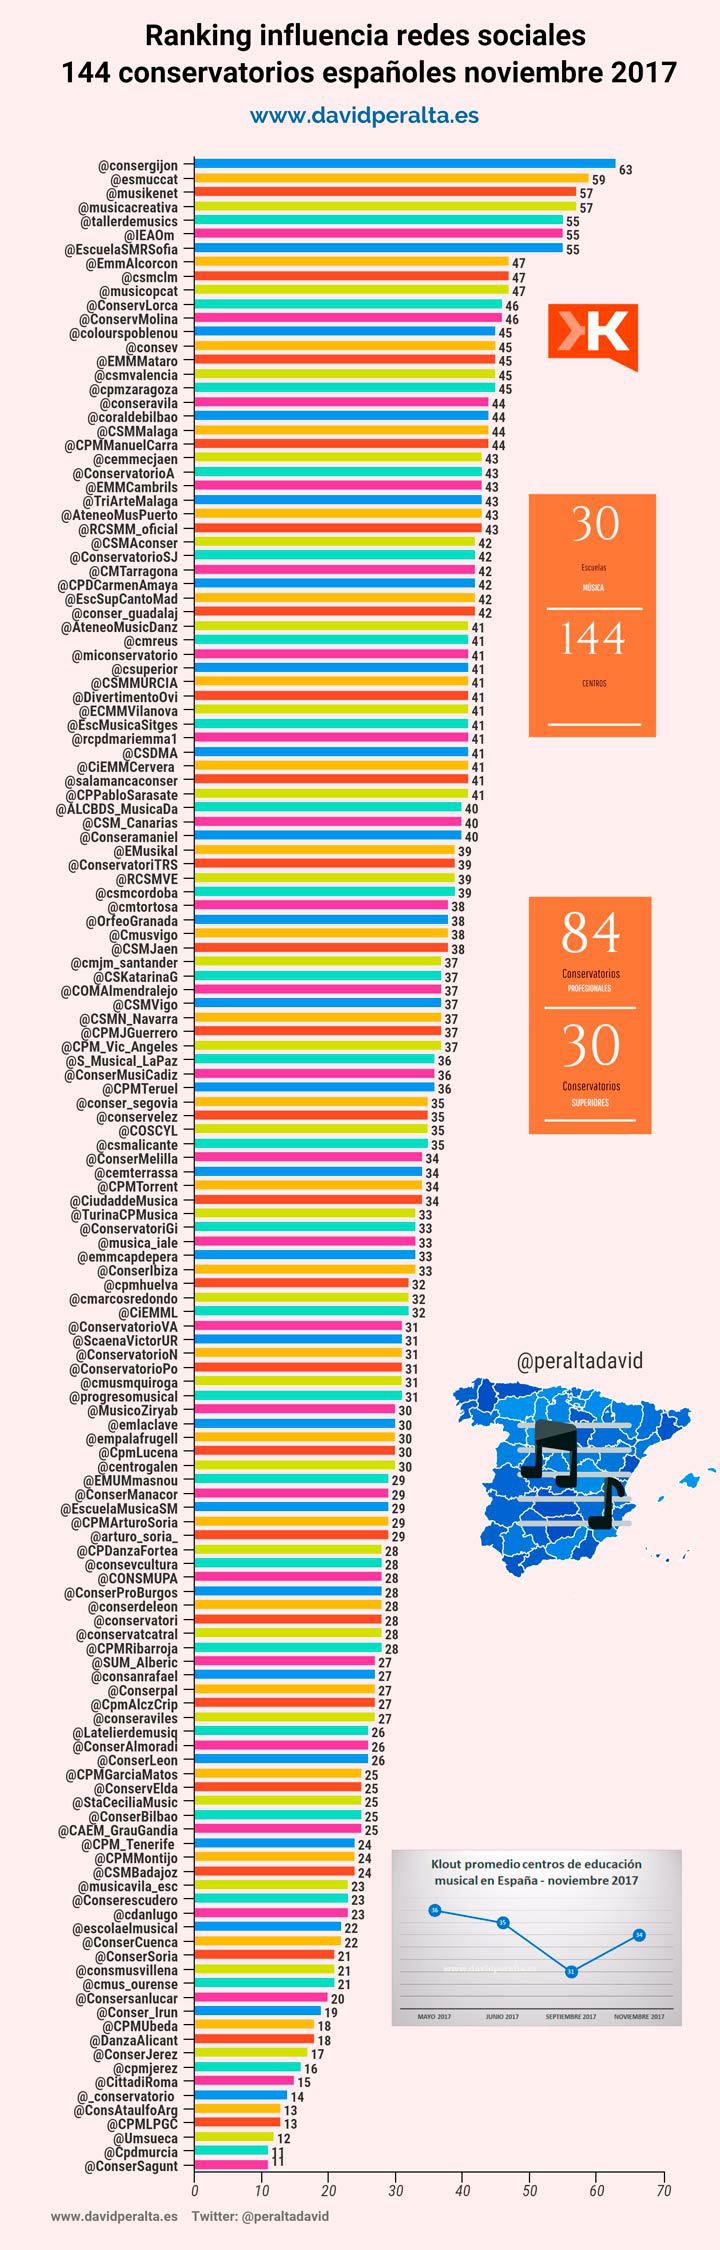 Ranking influencia de los conservatorios españoles en redes sociales (11/2017)